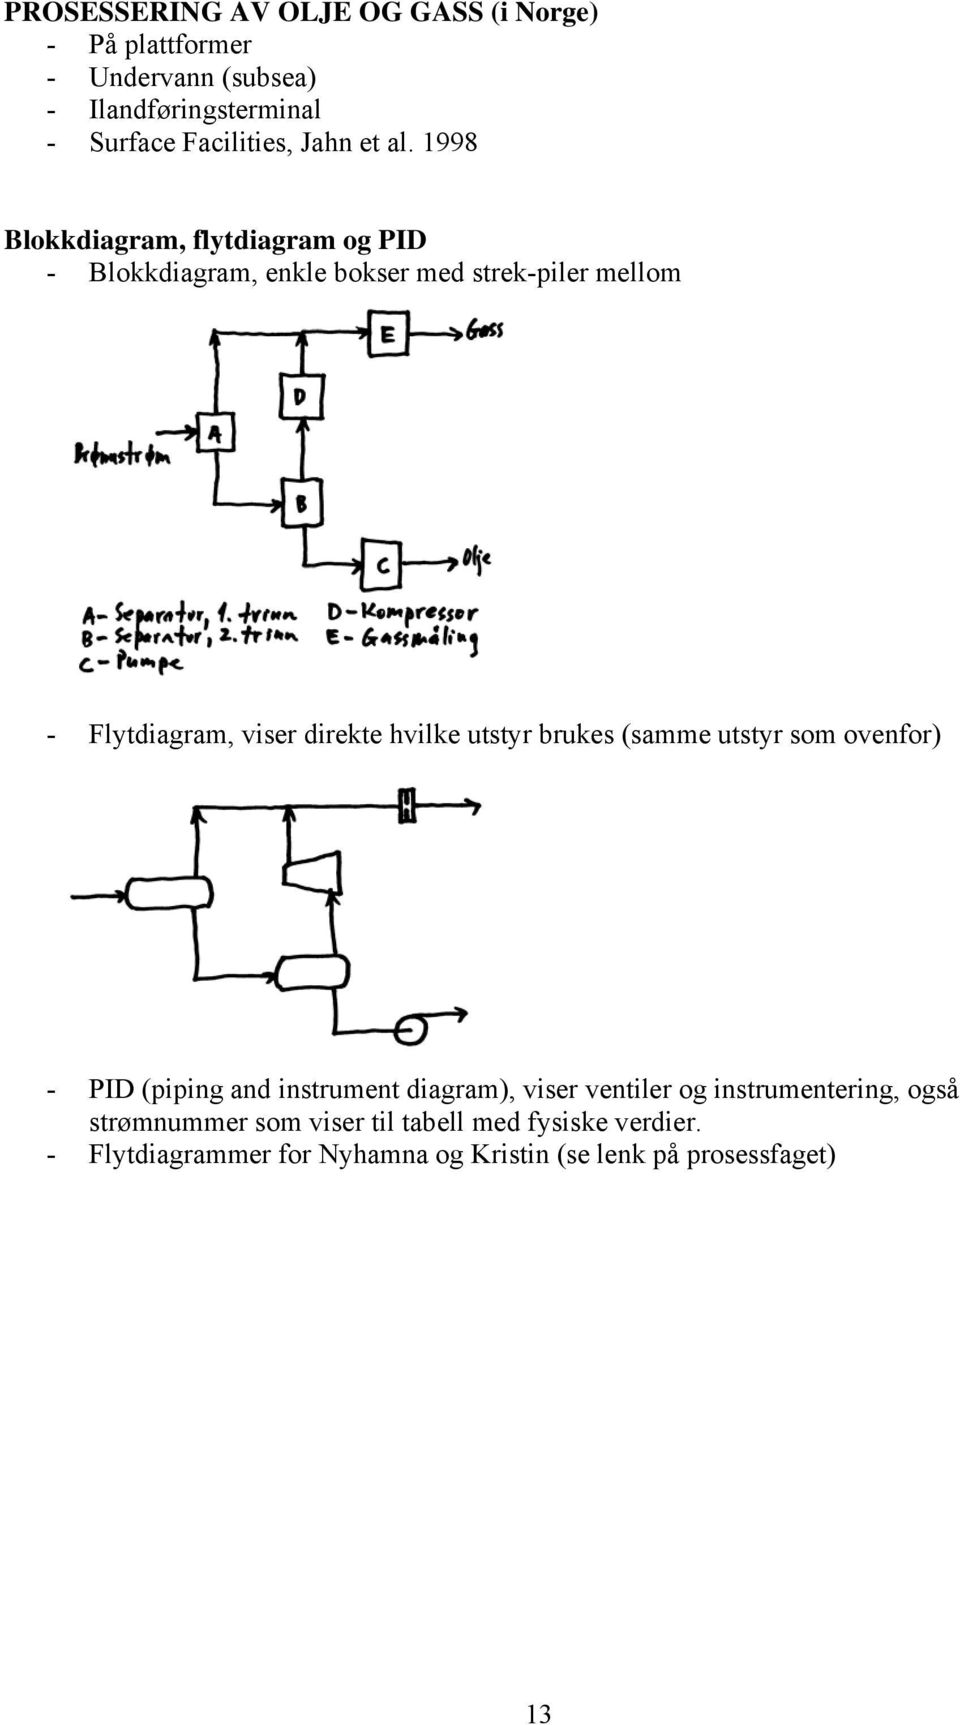 direkte hvilke uttyr bruke (amme uttyr m venfr) - PID (iing and intrument diagram), vier ventiler g